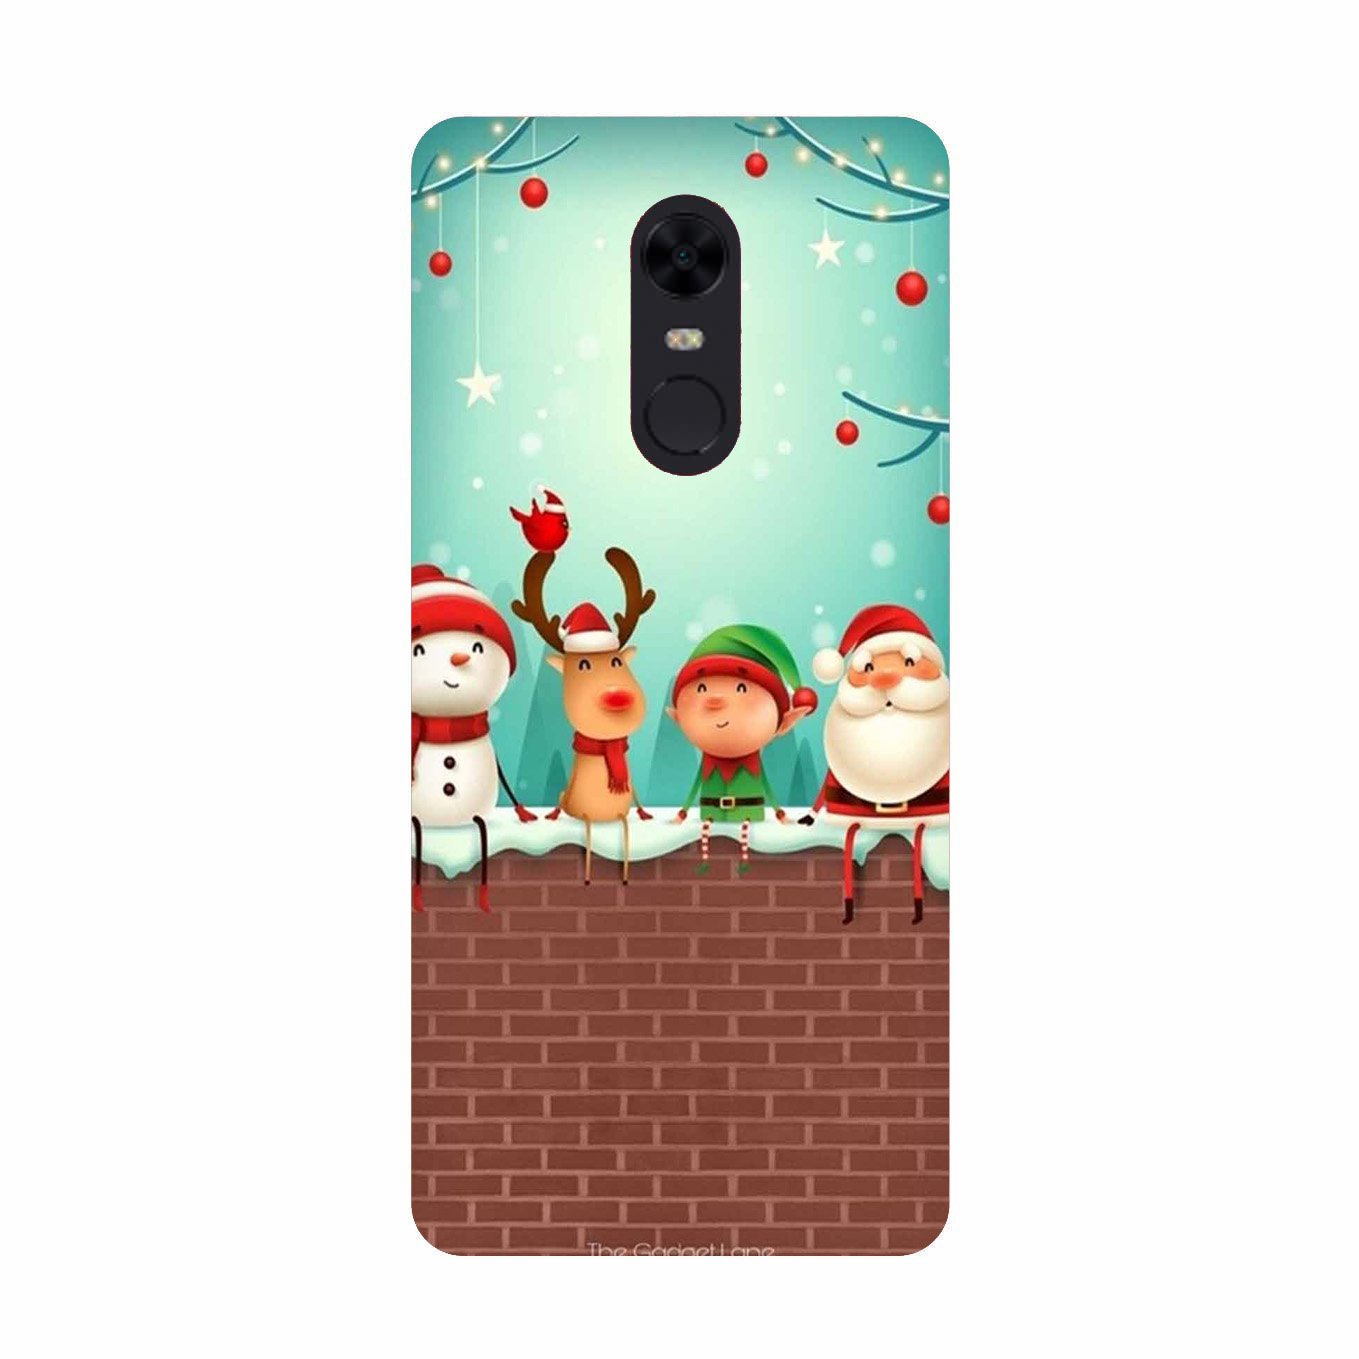 Santa Claus Mobile Back Case for Redmi Note 4(Design - 334)